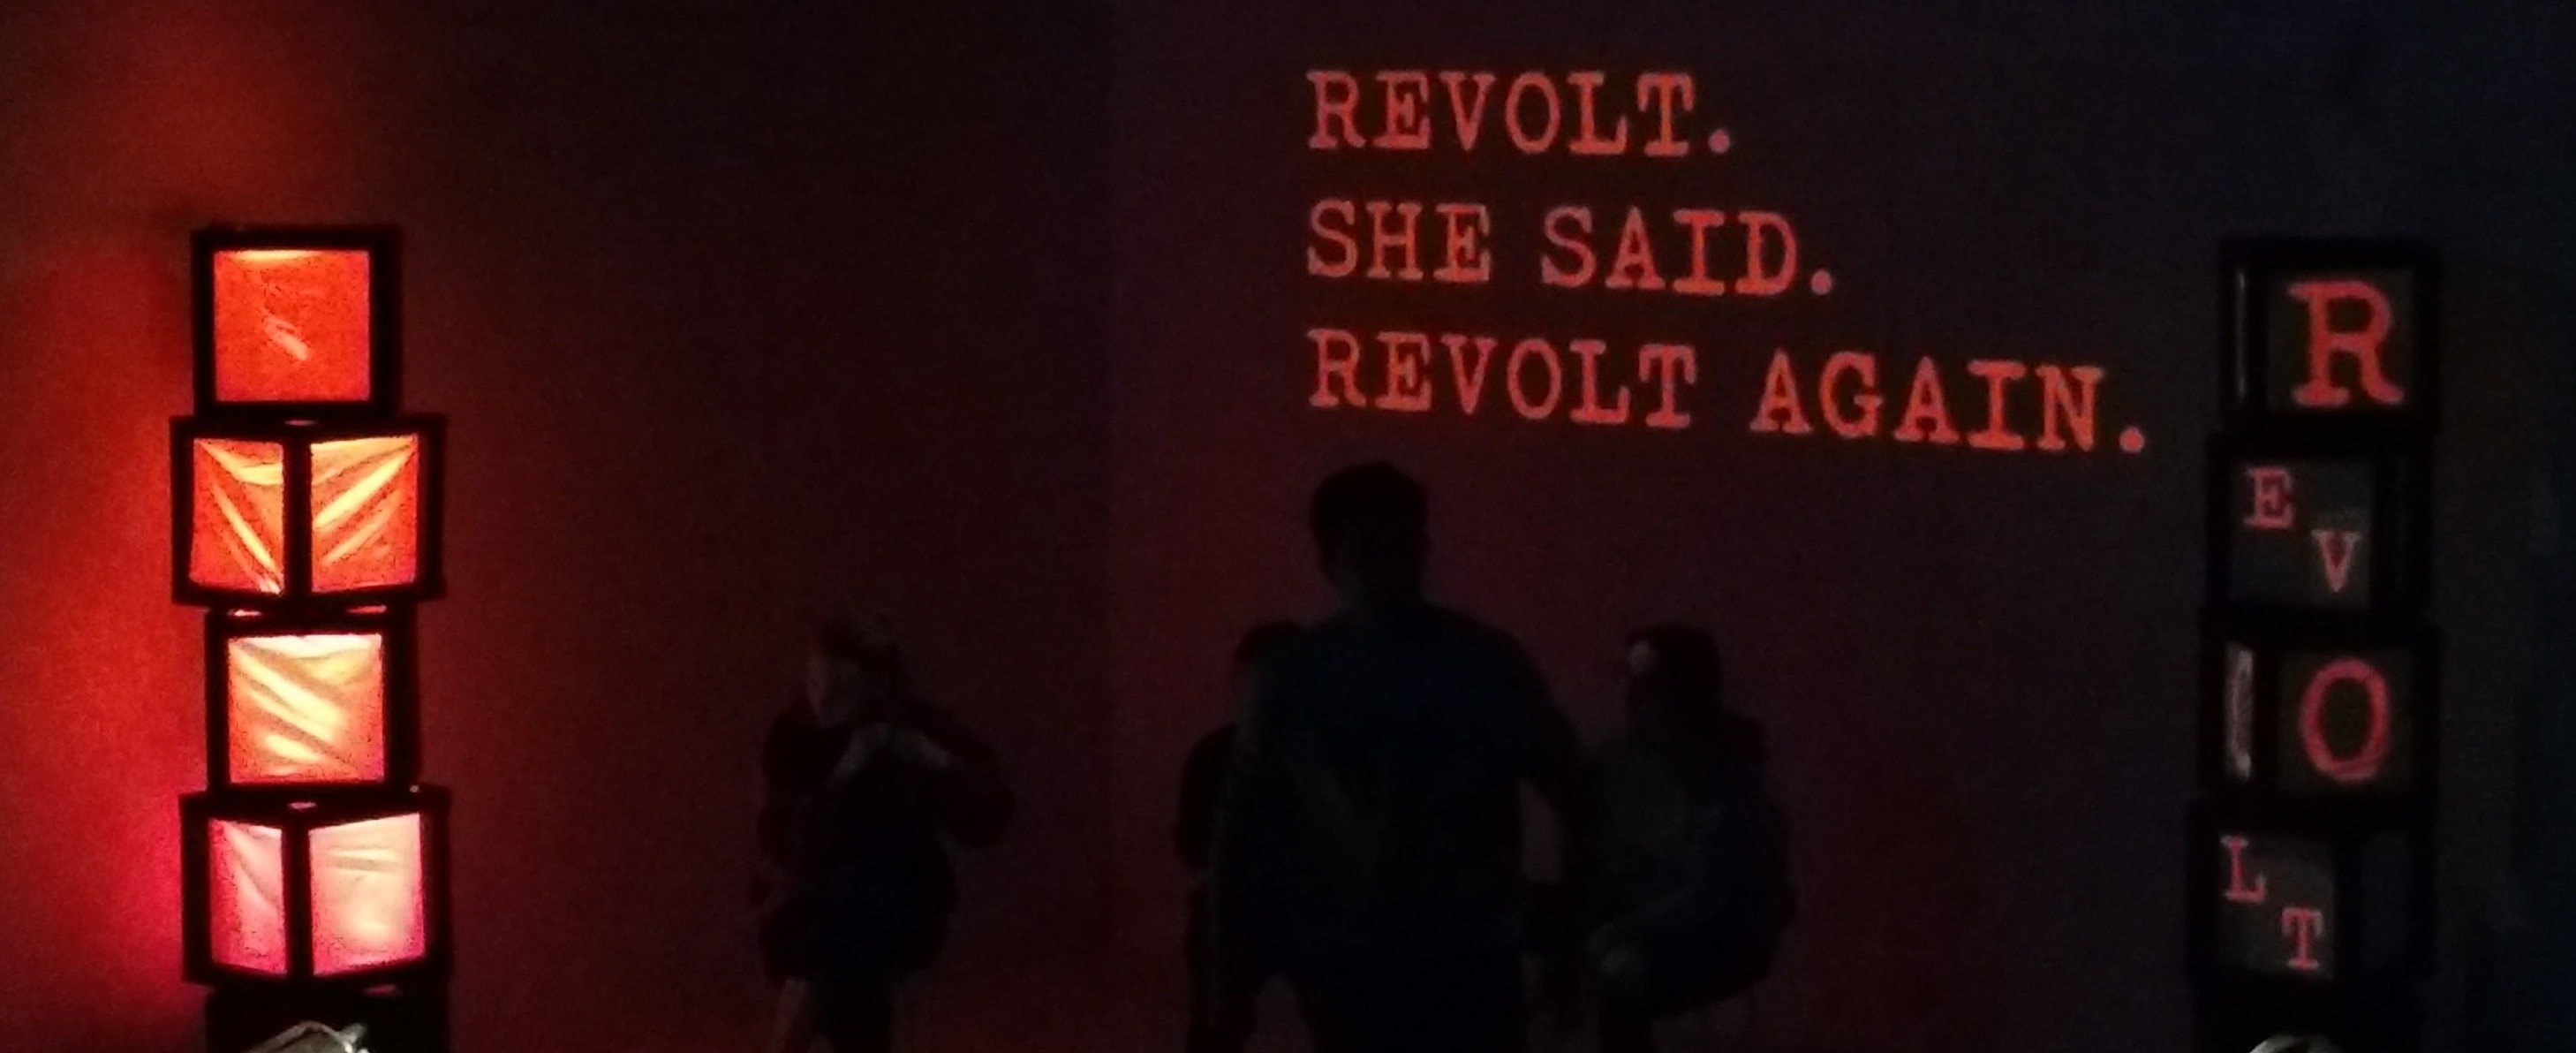 The stage for 'Revolt. She Said. Revolt Again.'